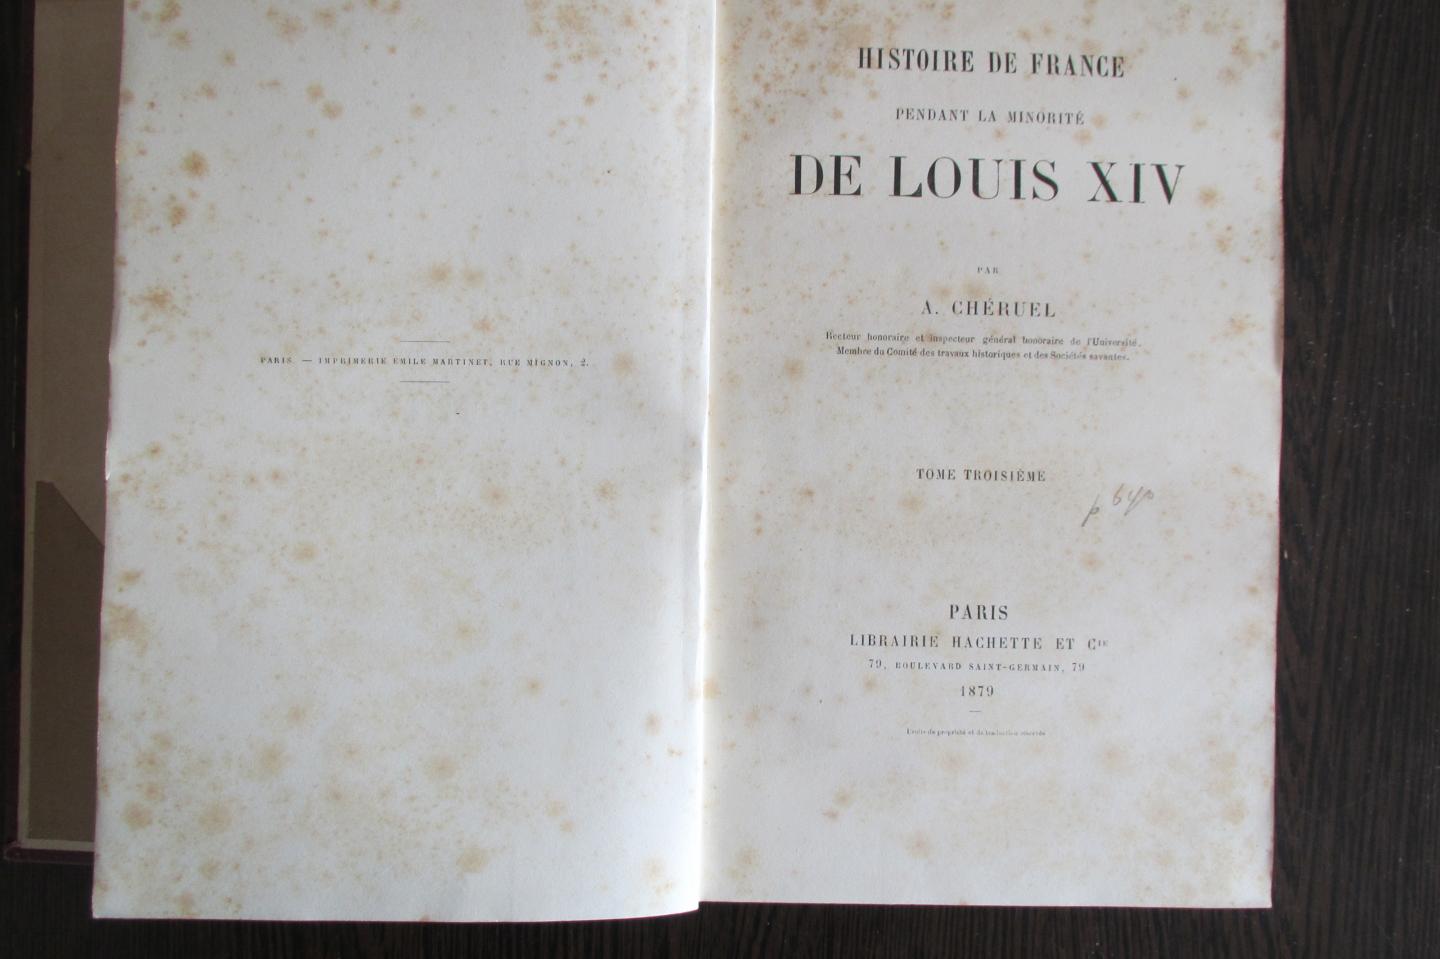 A. Cheruel - A. Cheruel - Histoire de France pendant la minorité de Louis XIV - 1879